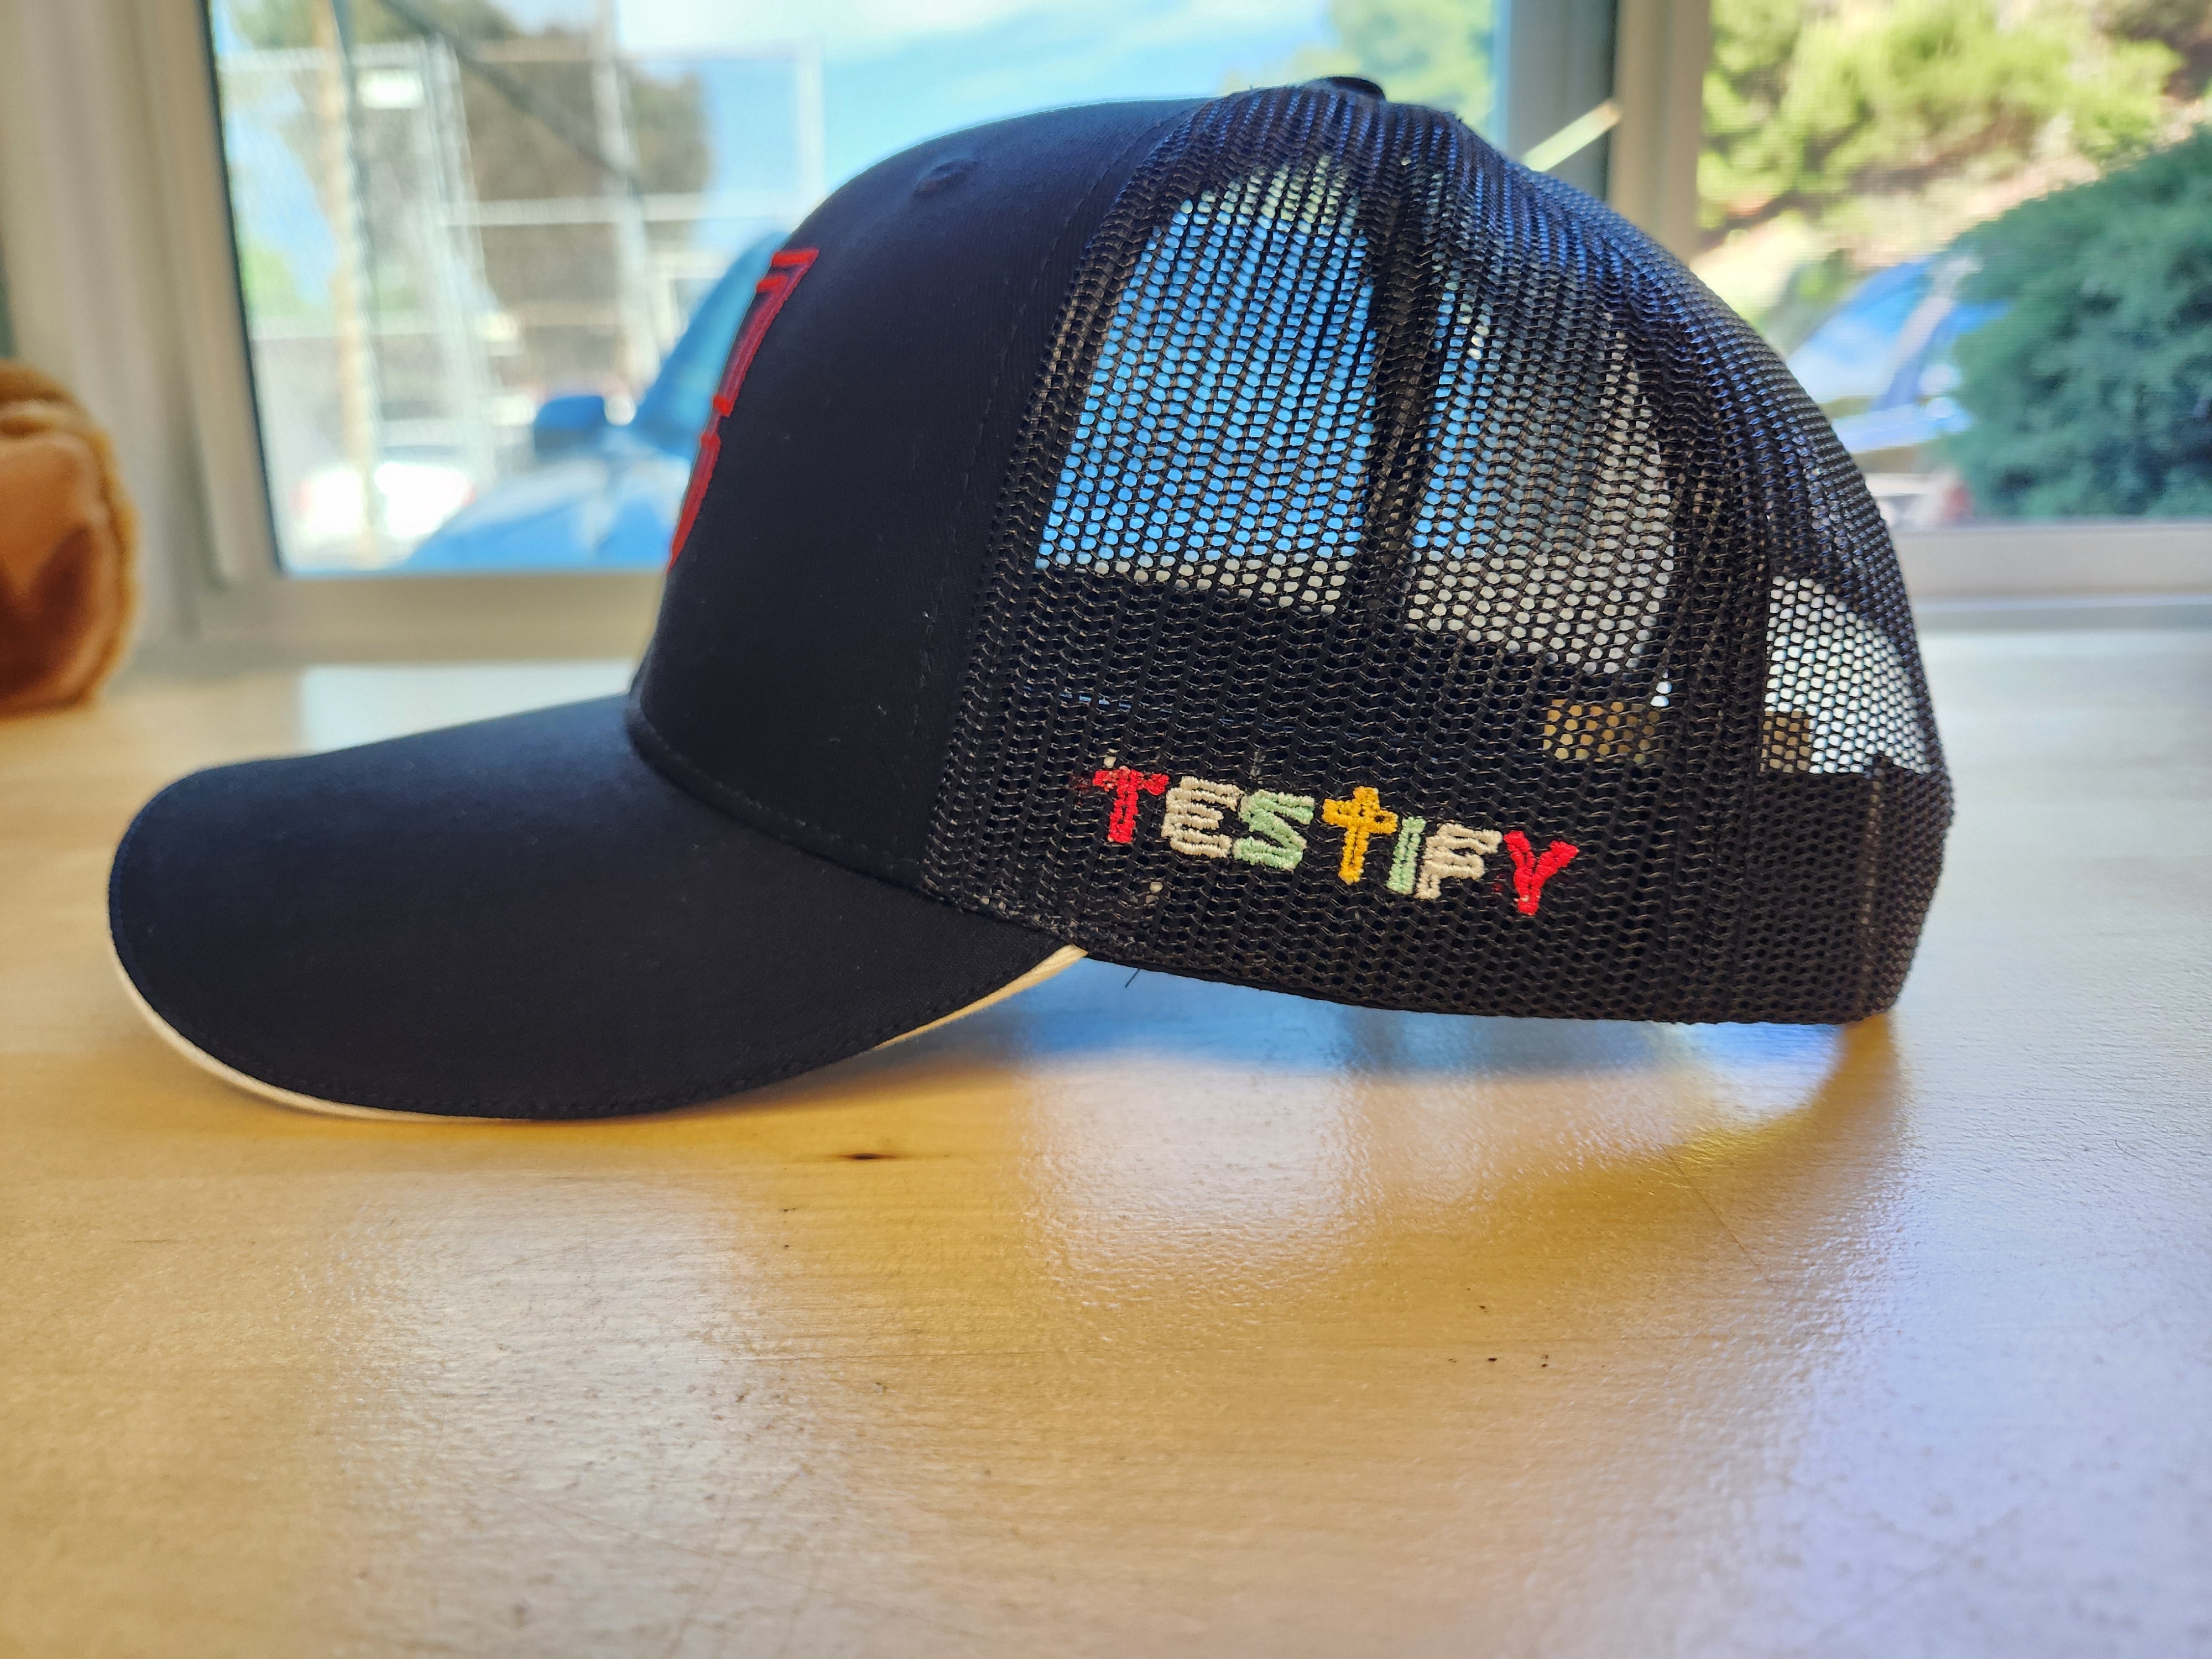 Testify hat